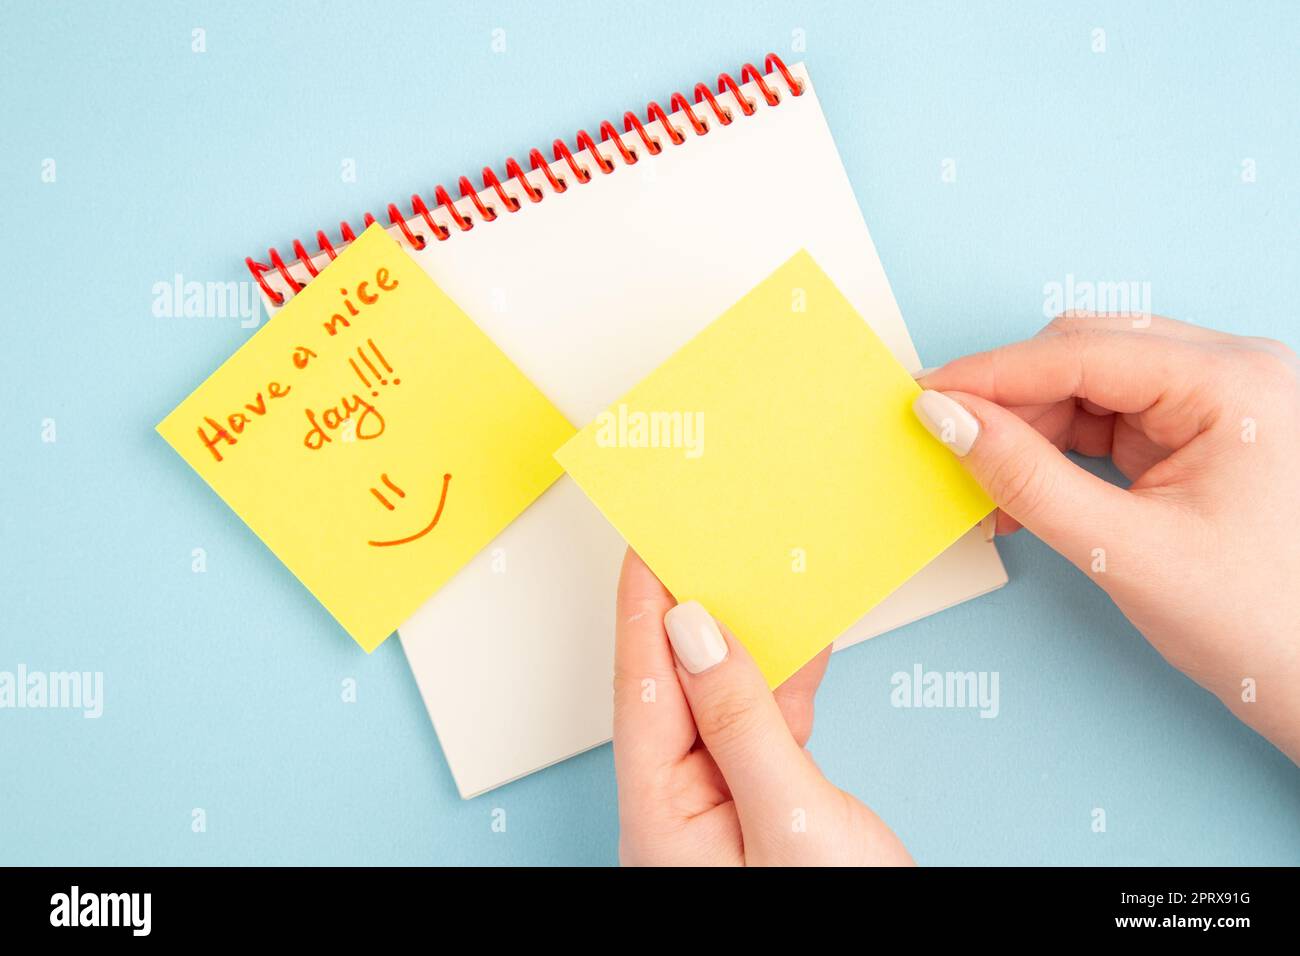 Top View Spiral Notizbuch Haftnotizen in Frauenhand Hab einen schönen Tag auf gelbem Notizpapier auf blauem Hintergrund geschrieben Stockfoto